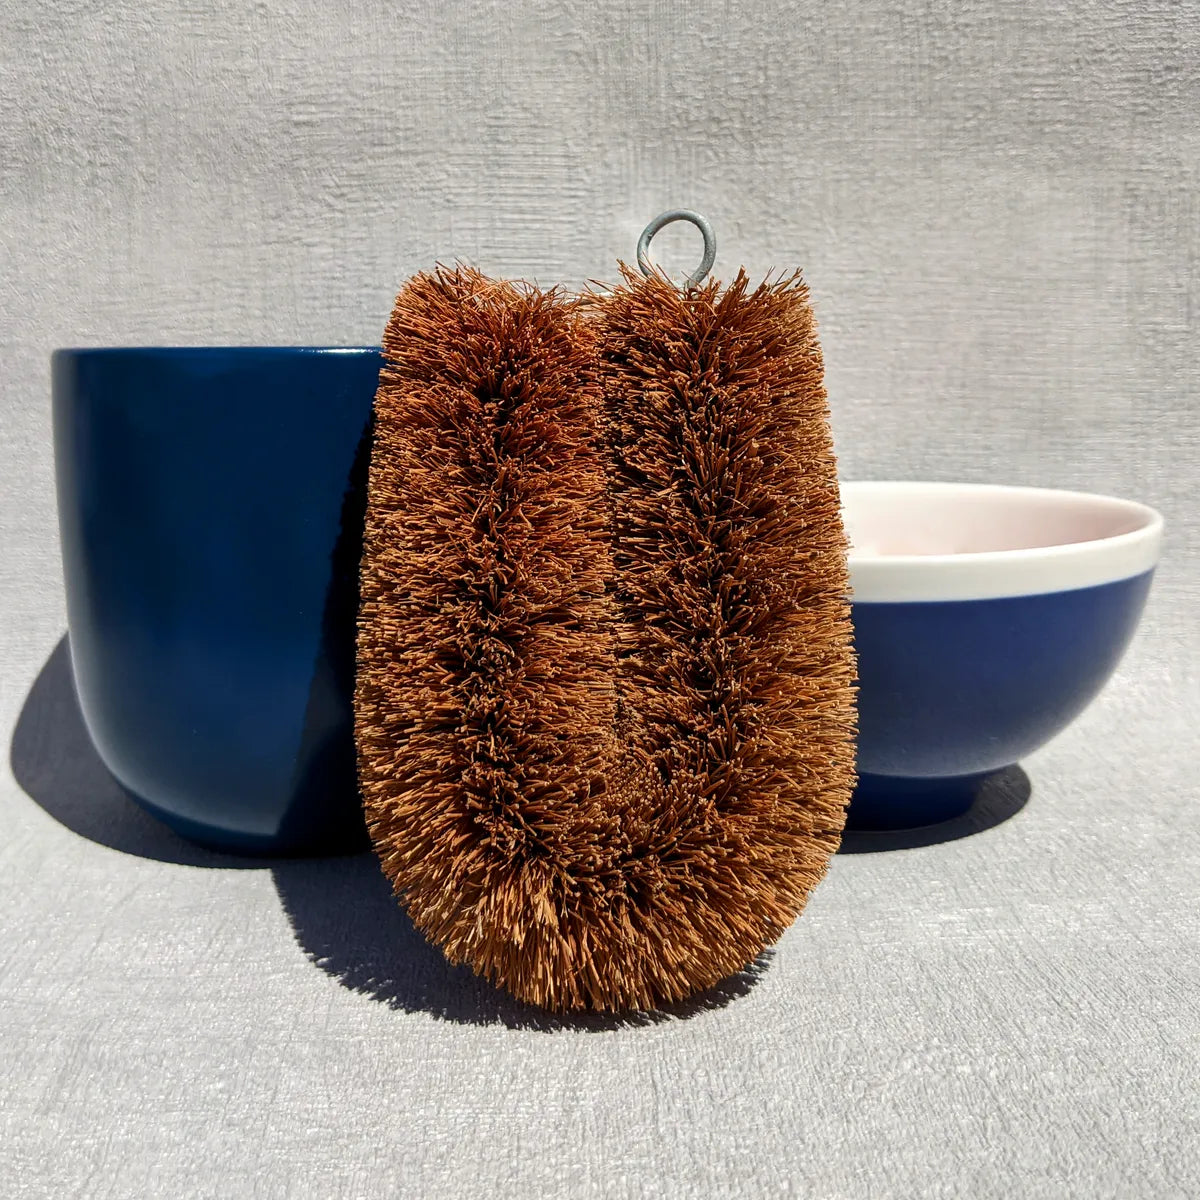 Coconut Fibre Dish Brush | Washing-Up Brush